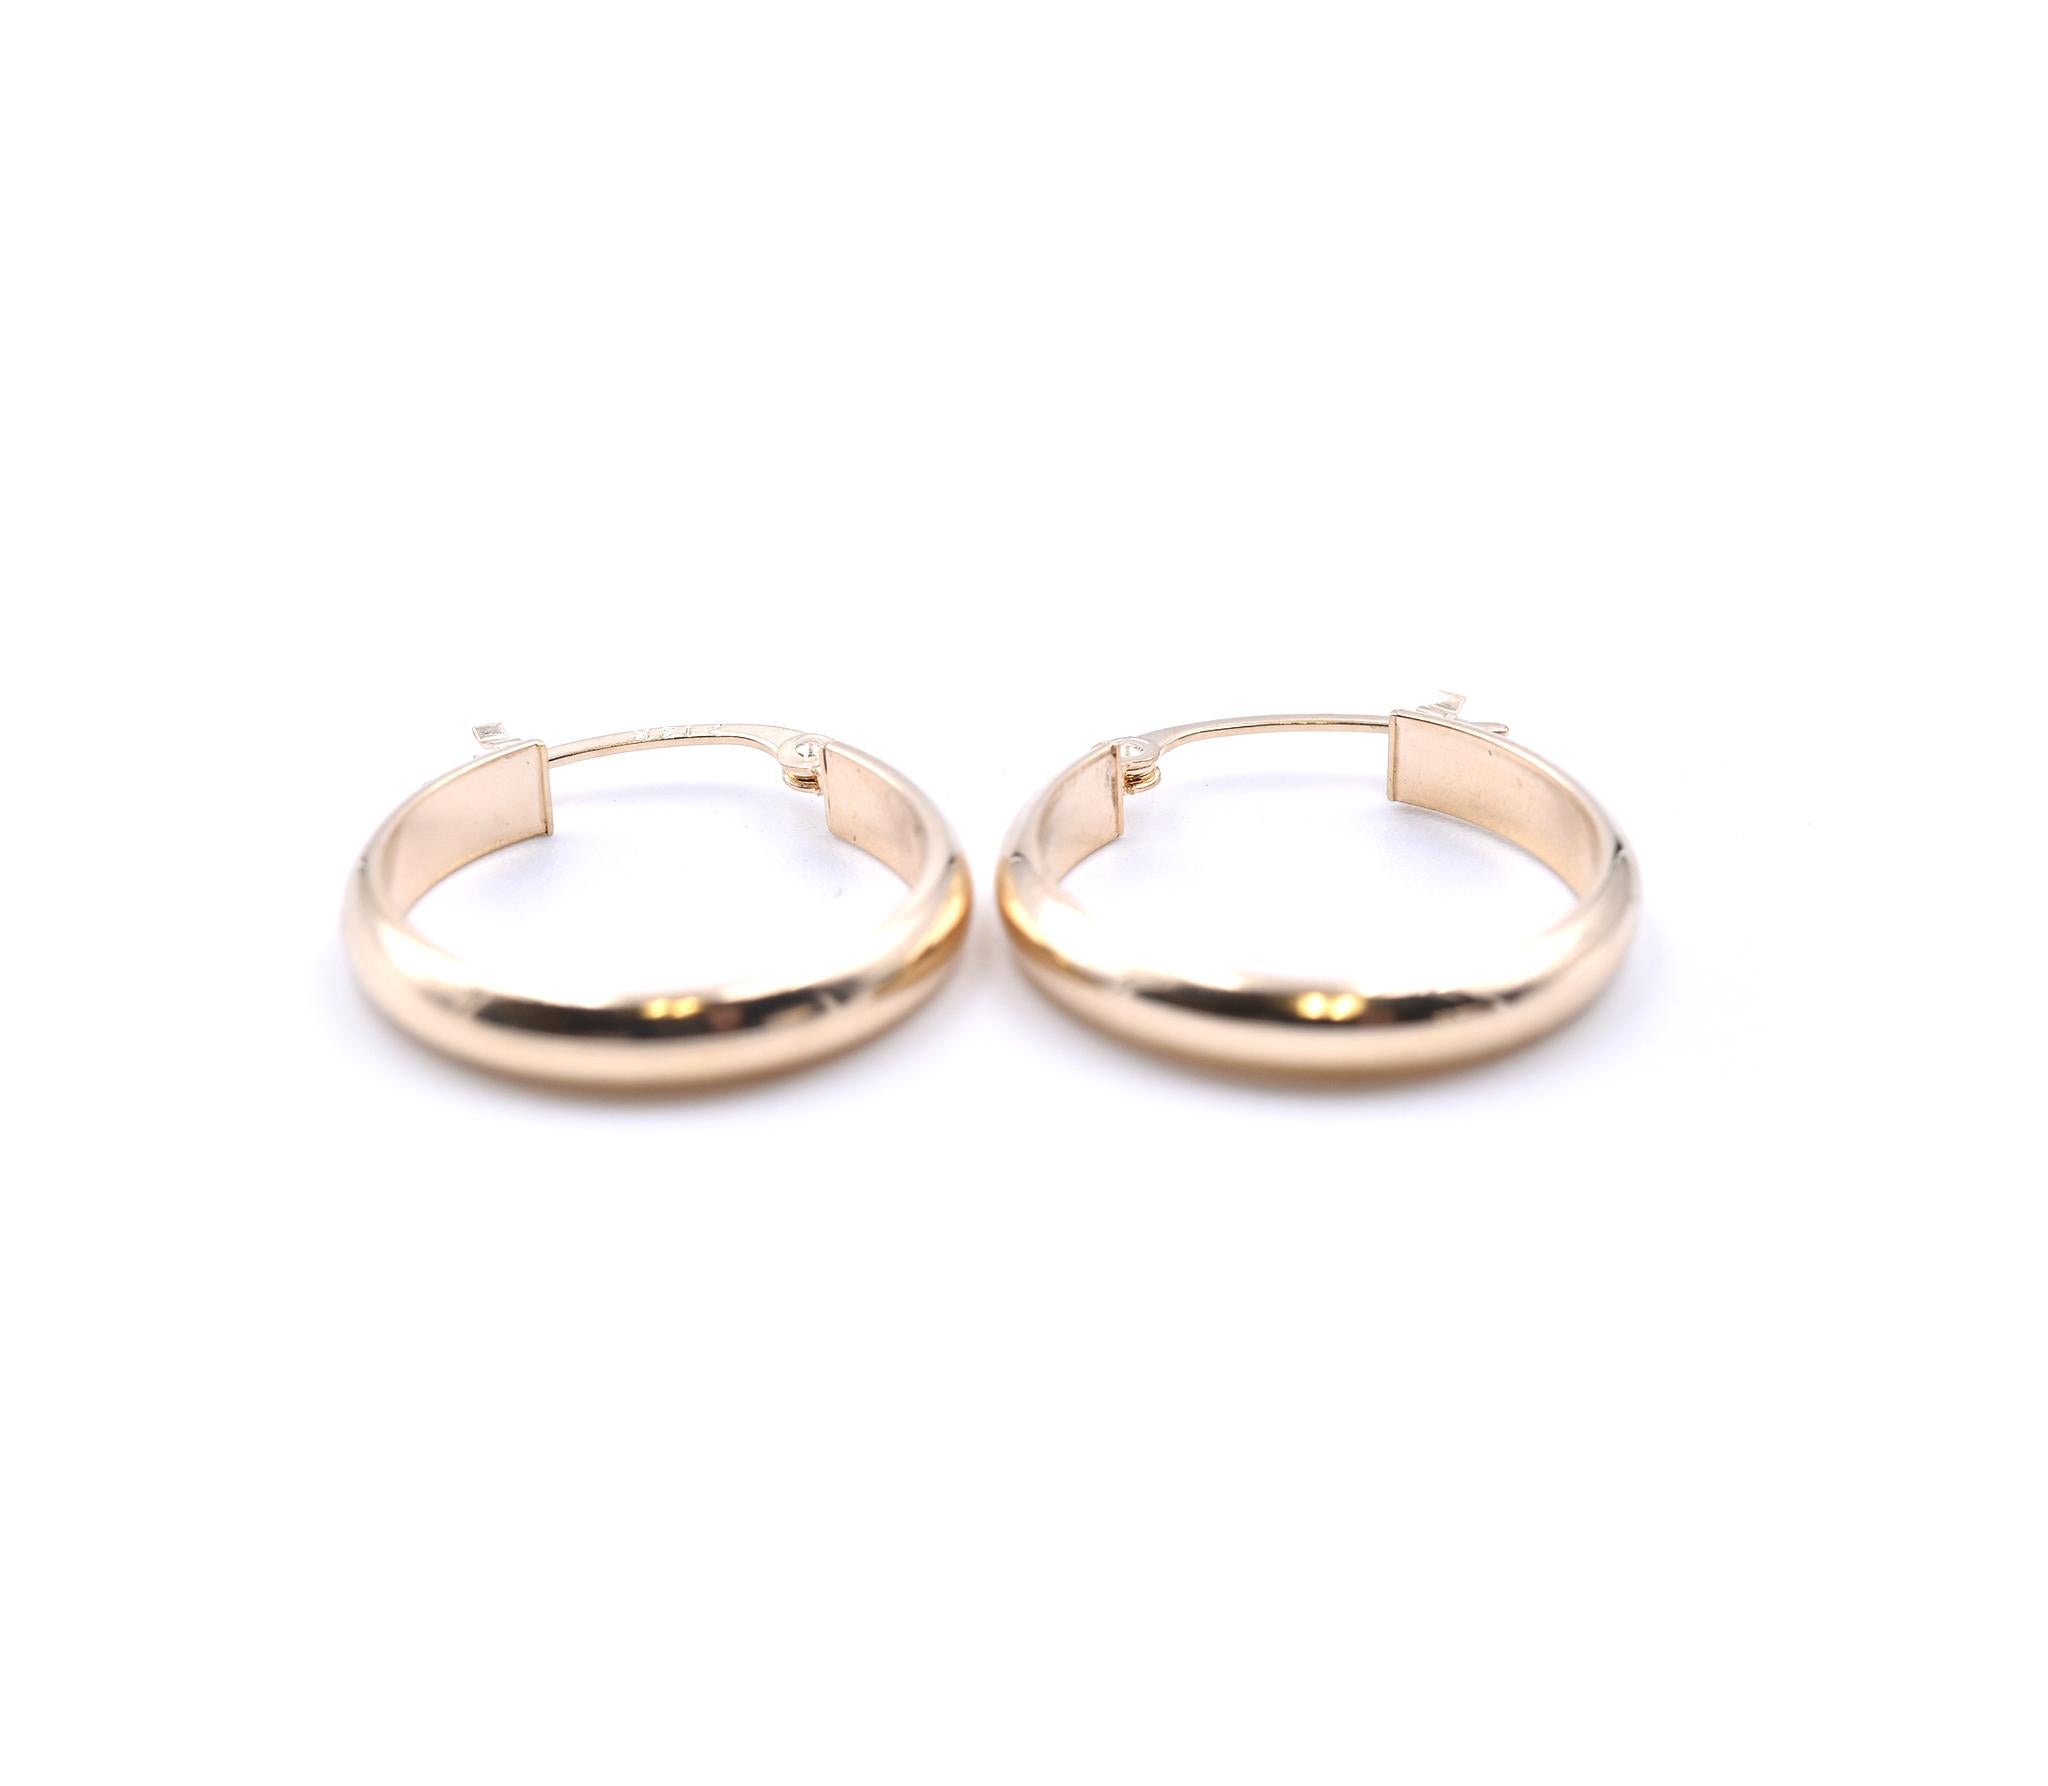 Designer: custom
Material: 14k yellow gold
Dimensions: earrings measure 17mm in diameter
Fastenings: snap closure
Weight: 1.01 grams